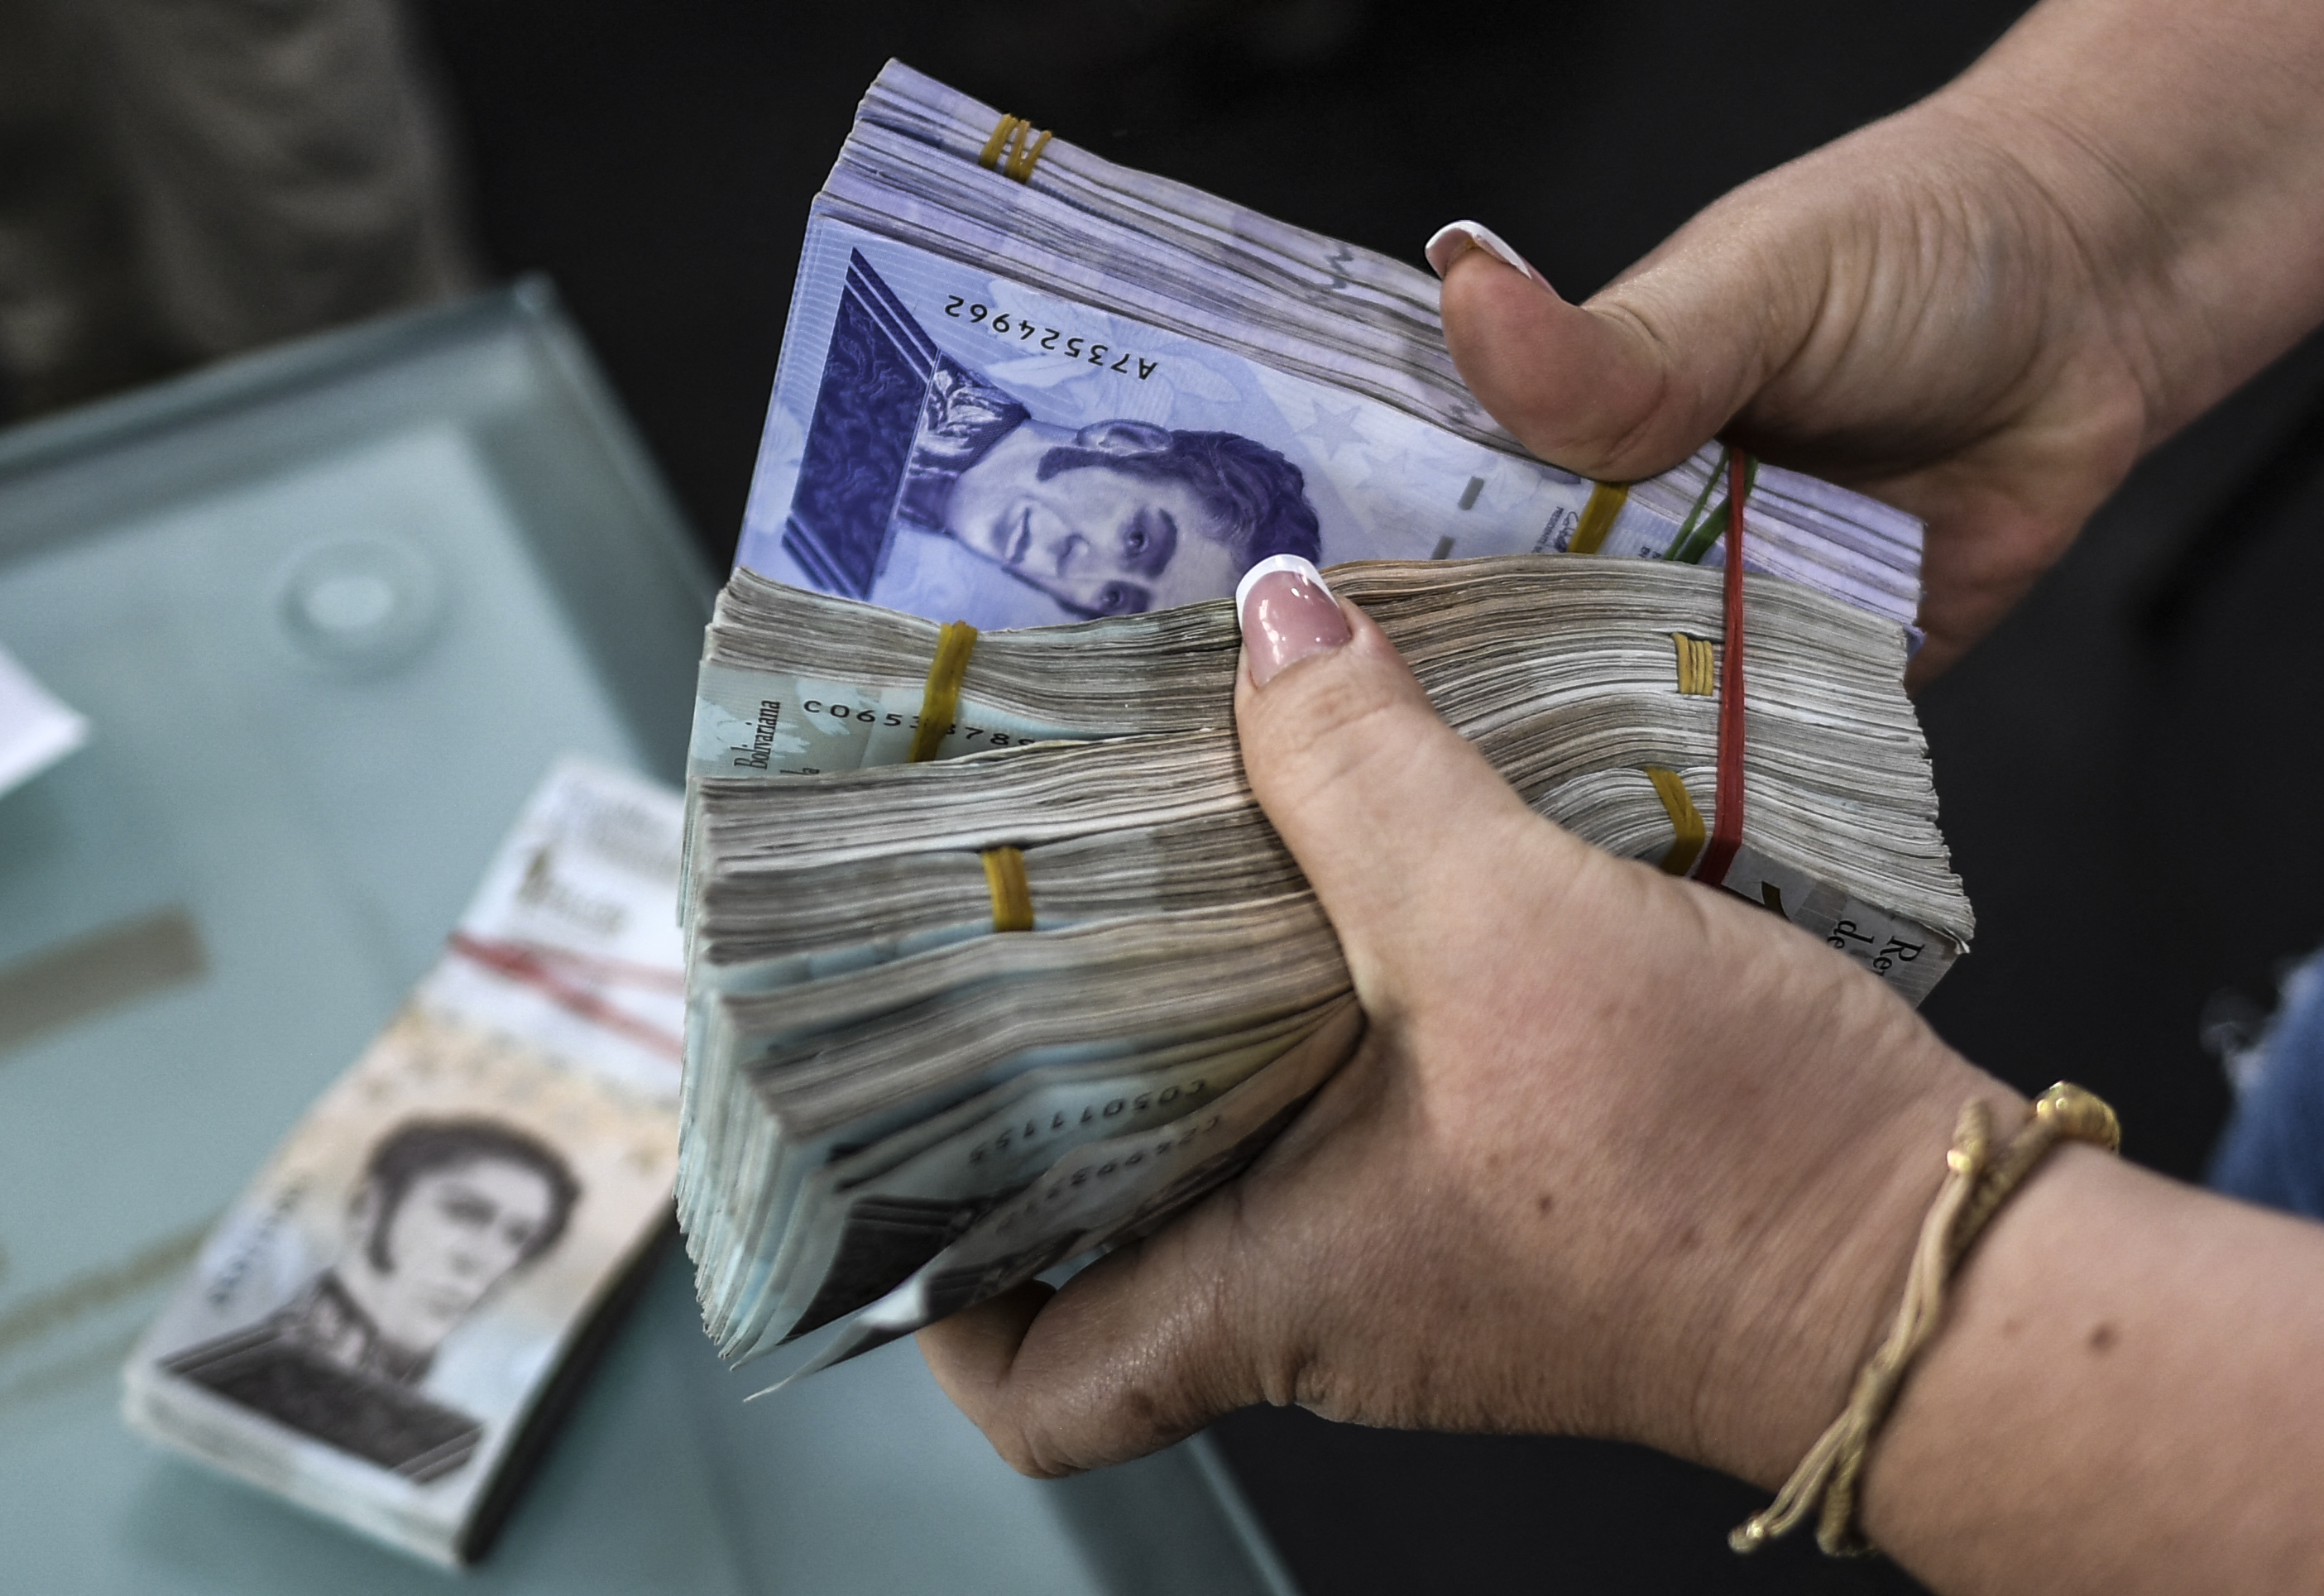 Aumentos salariales en Venezuela tras reconversiones ¿Cuánto tardaron en anunciarlos?